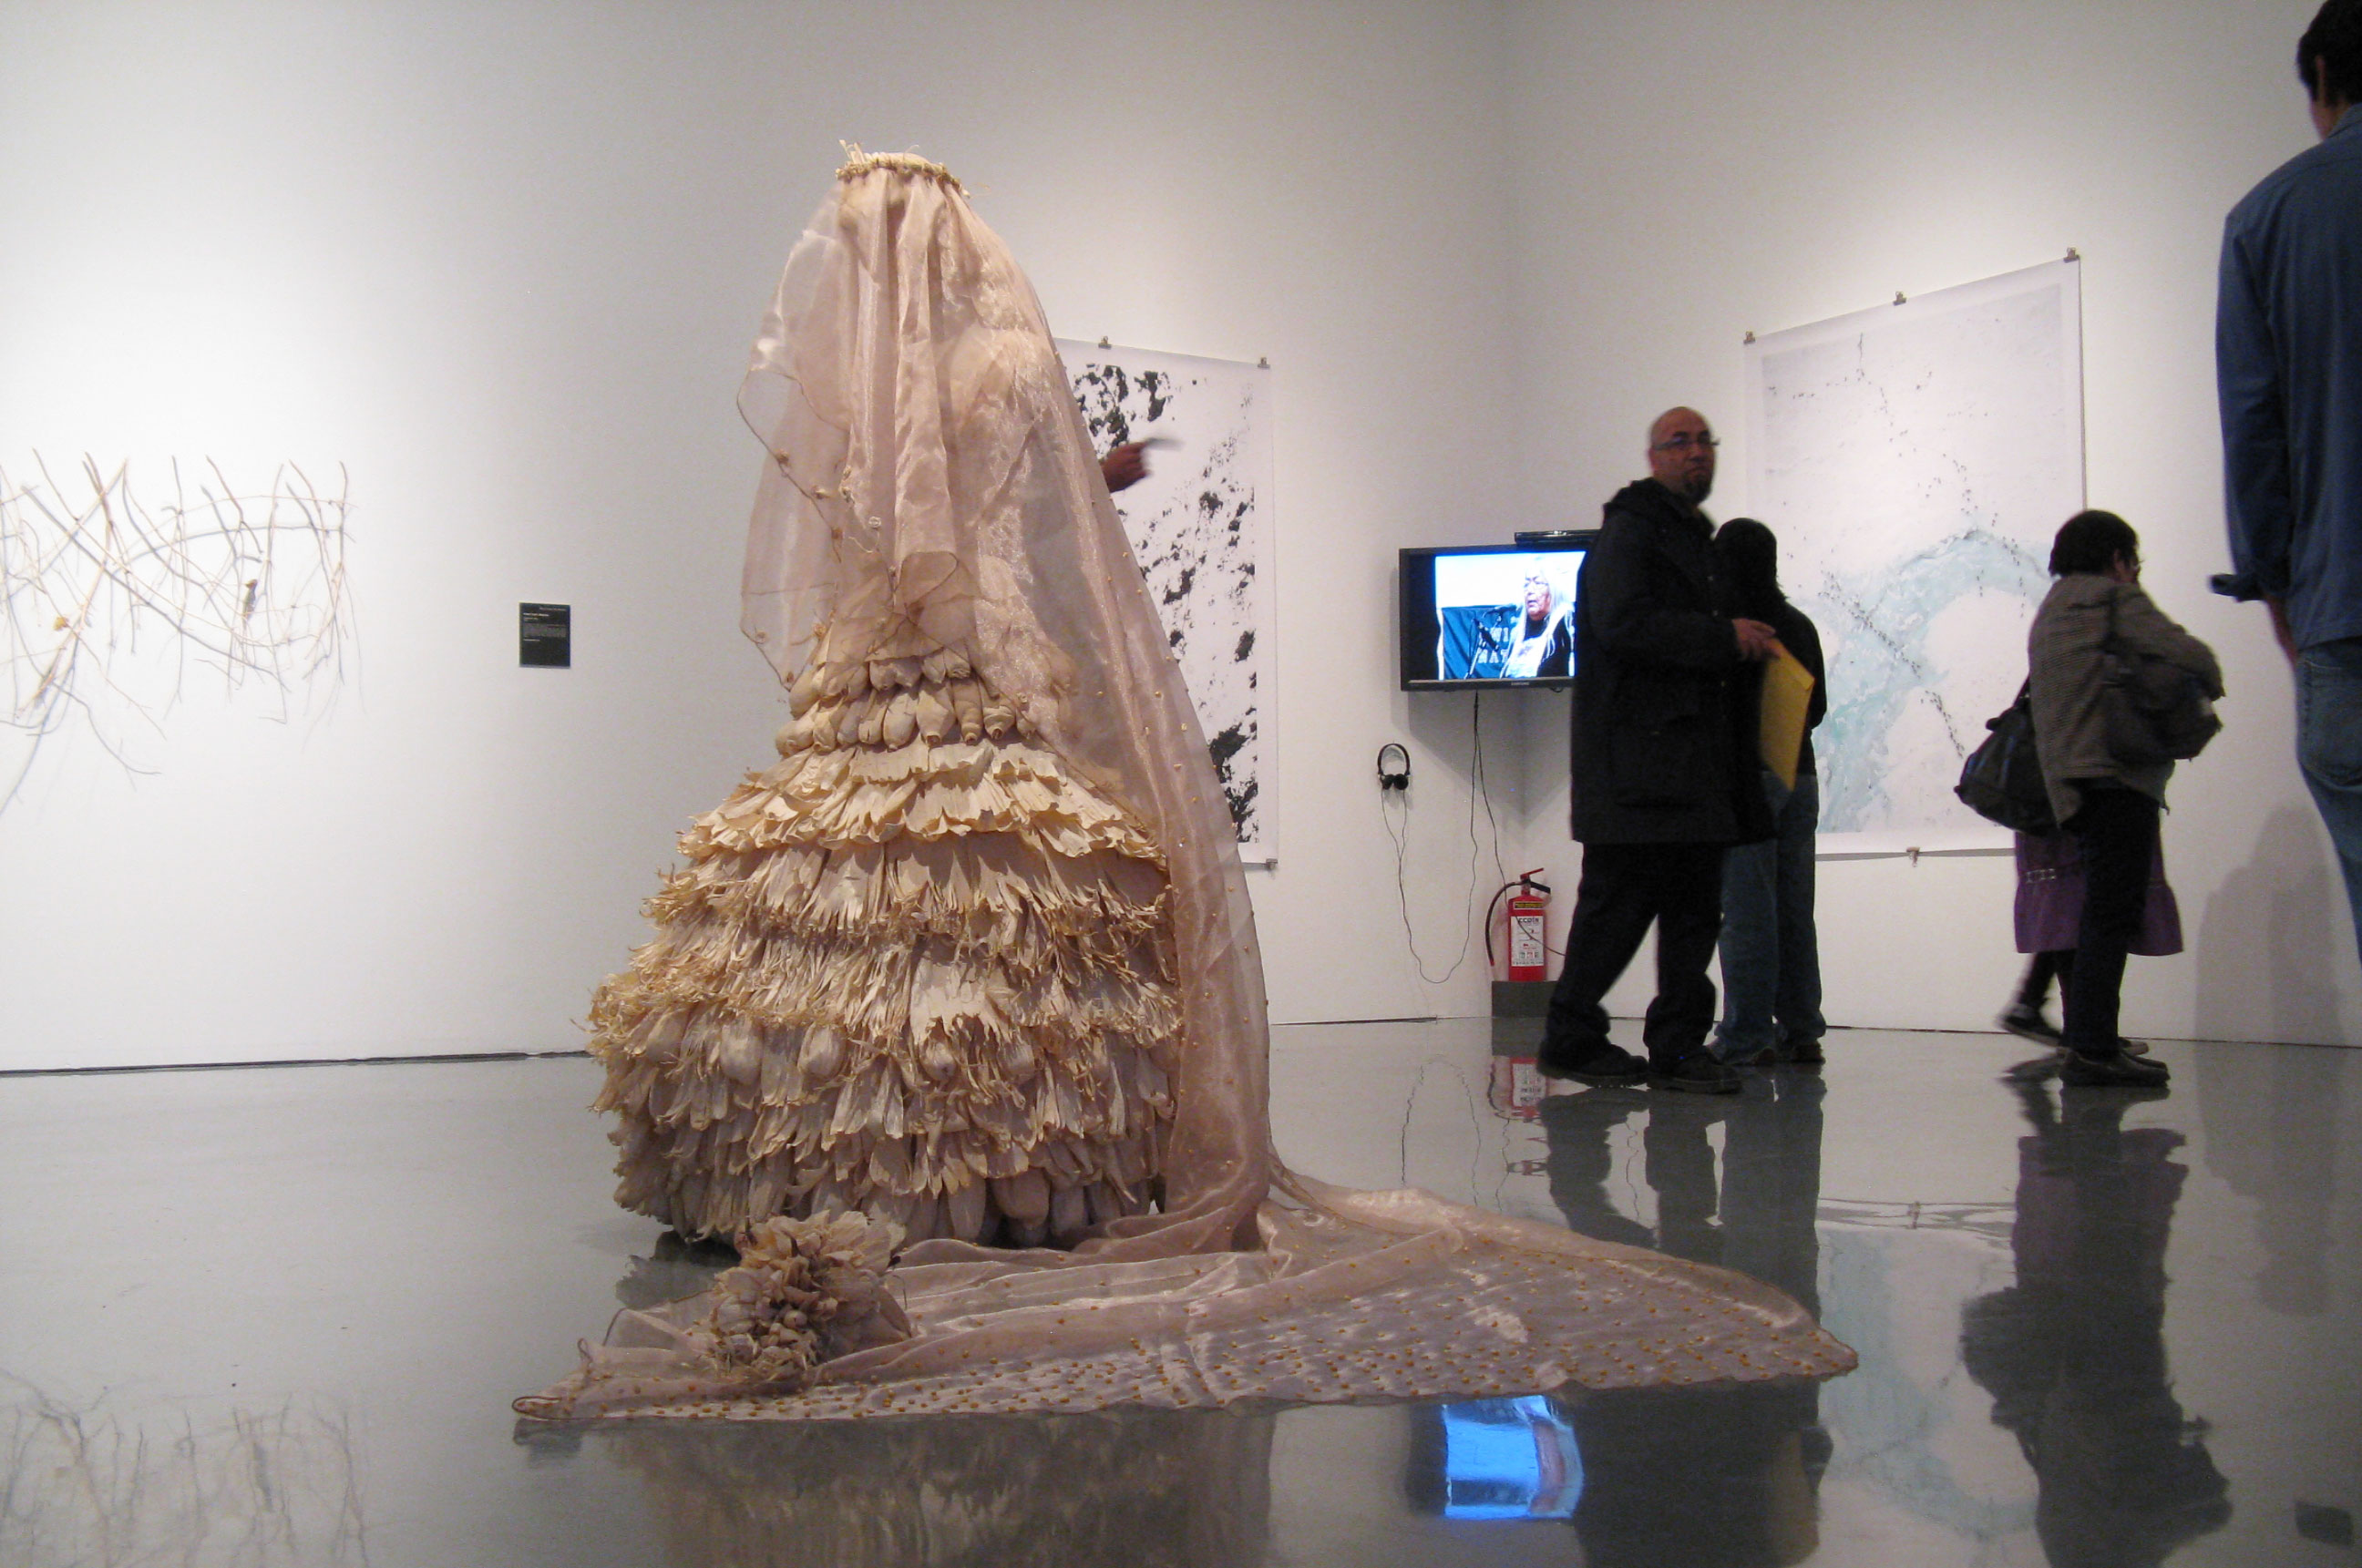 Javier Velasco, La Novia de Tlaxcala, (Re-)Cycle of Paradise exhibition, COP15, Copenhagen, 2009